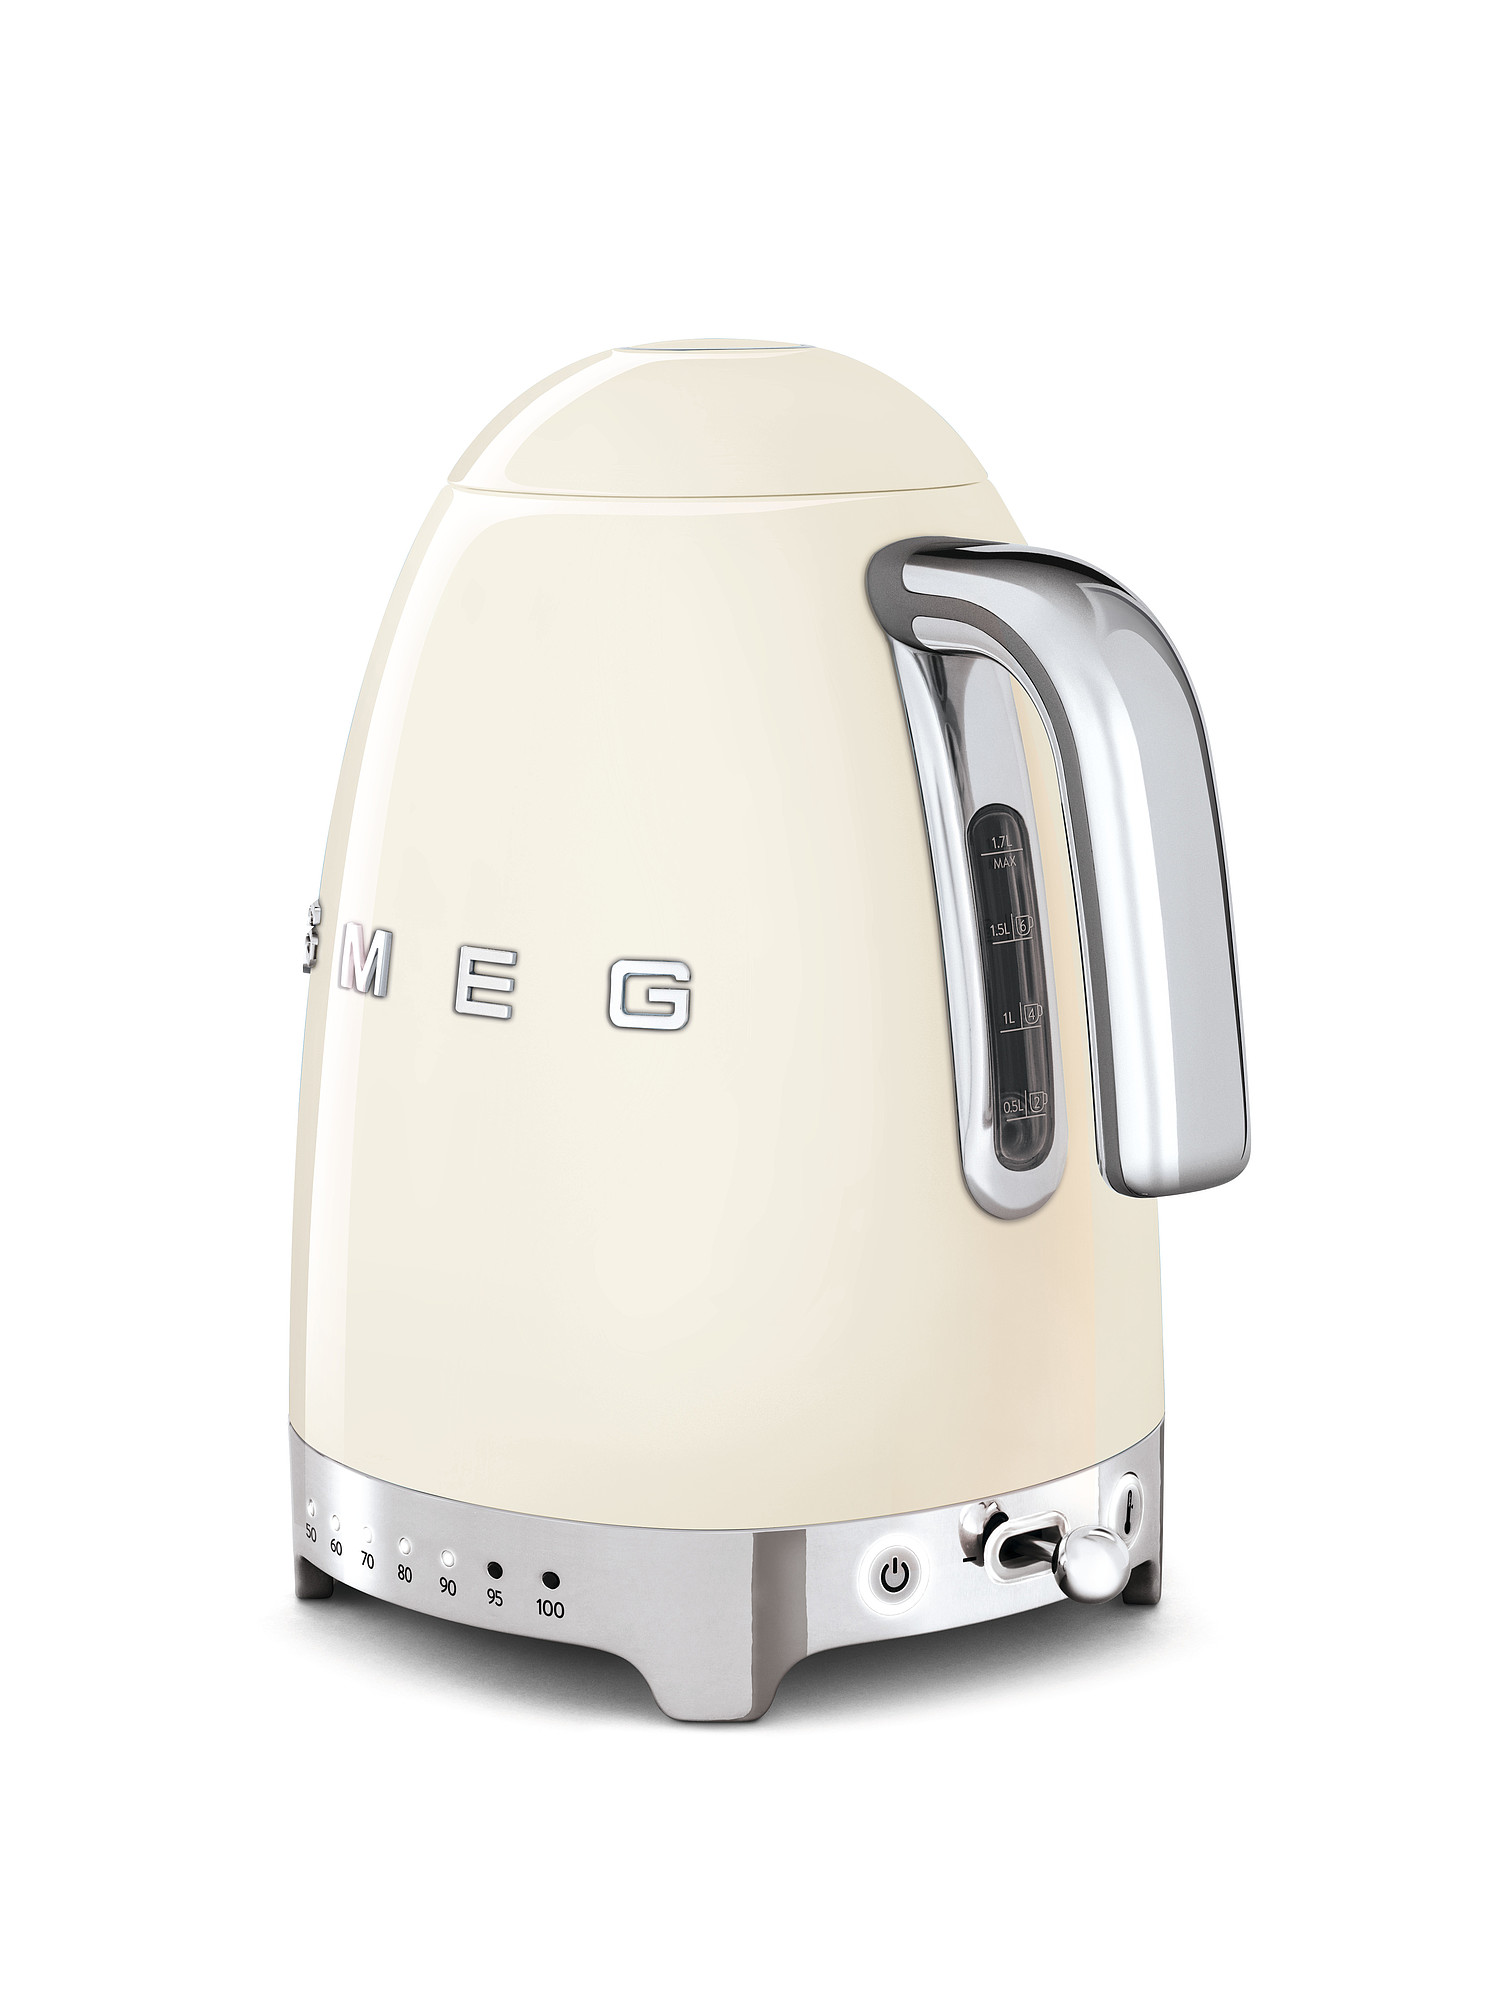 SMEG Wasserkocher mit Temperaturregelung - Toaster Set Creme